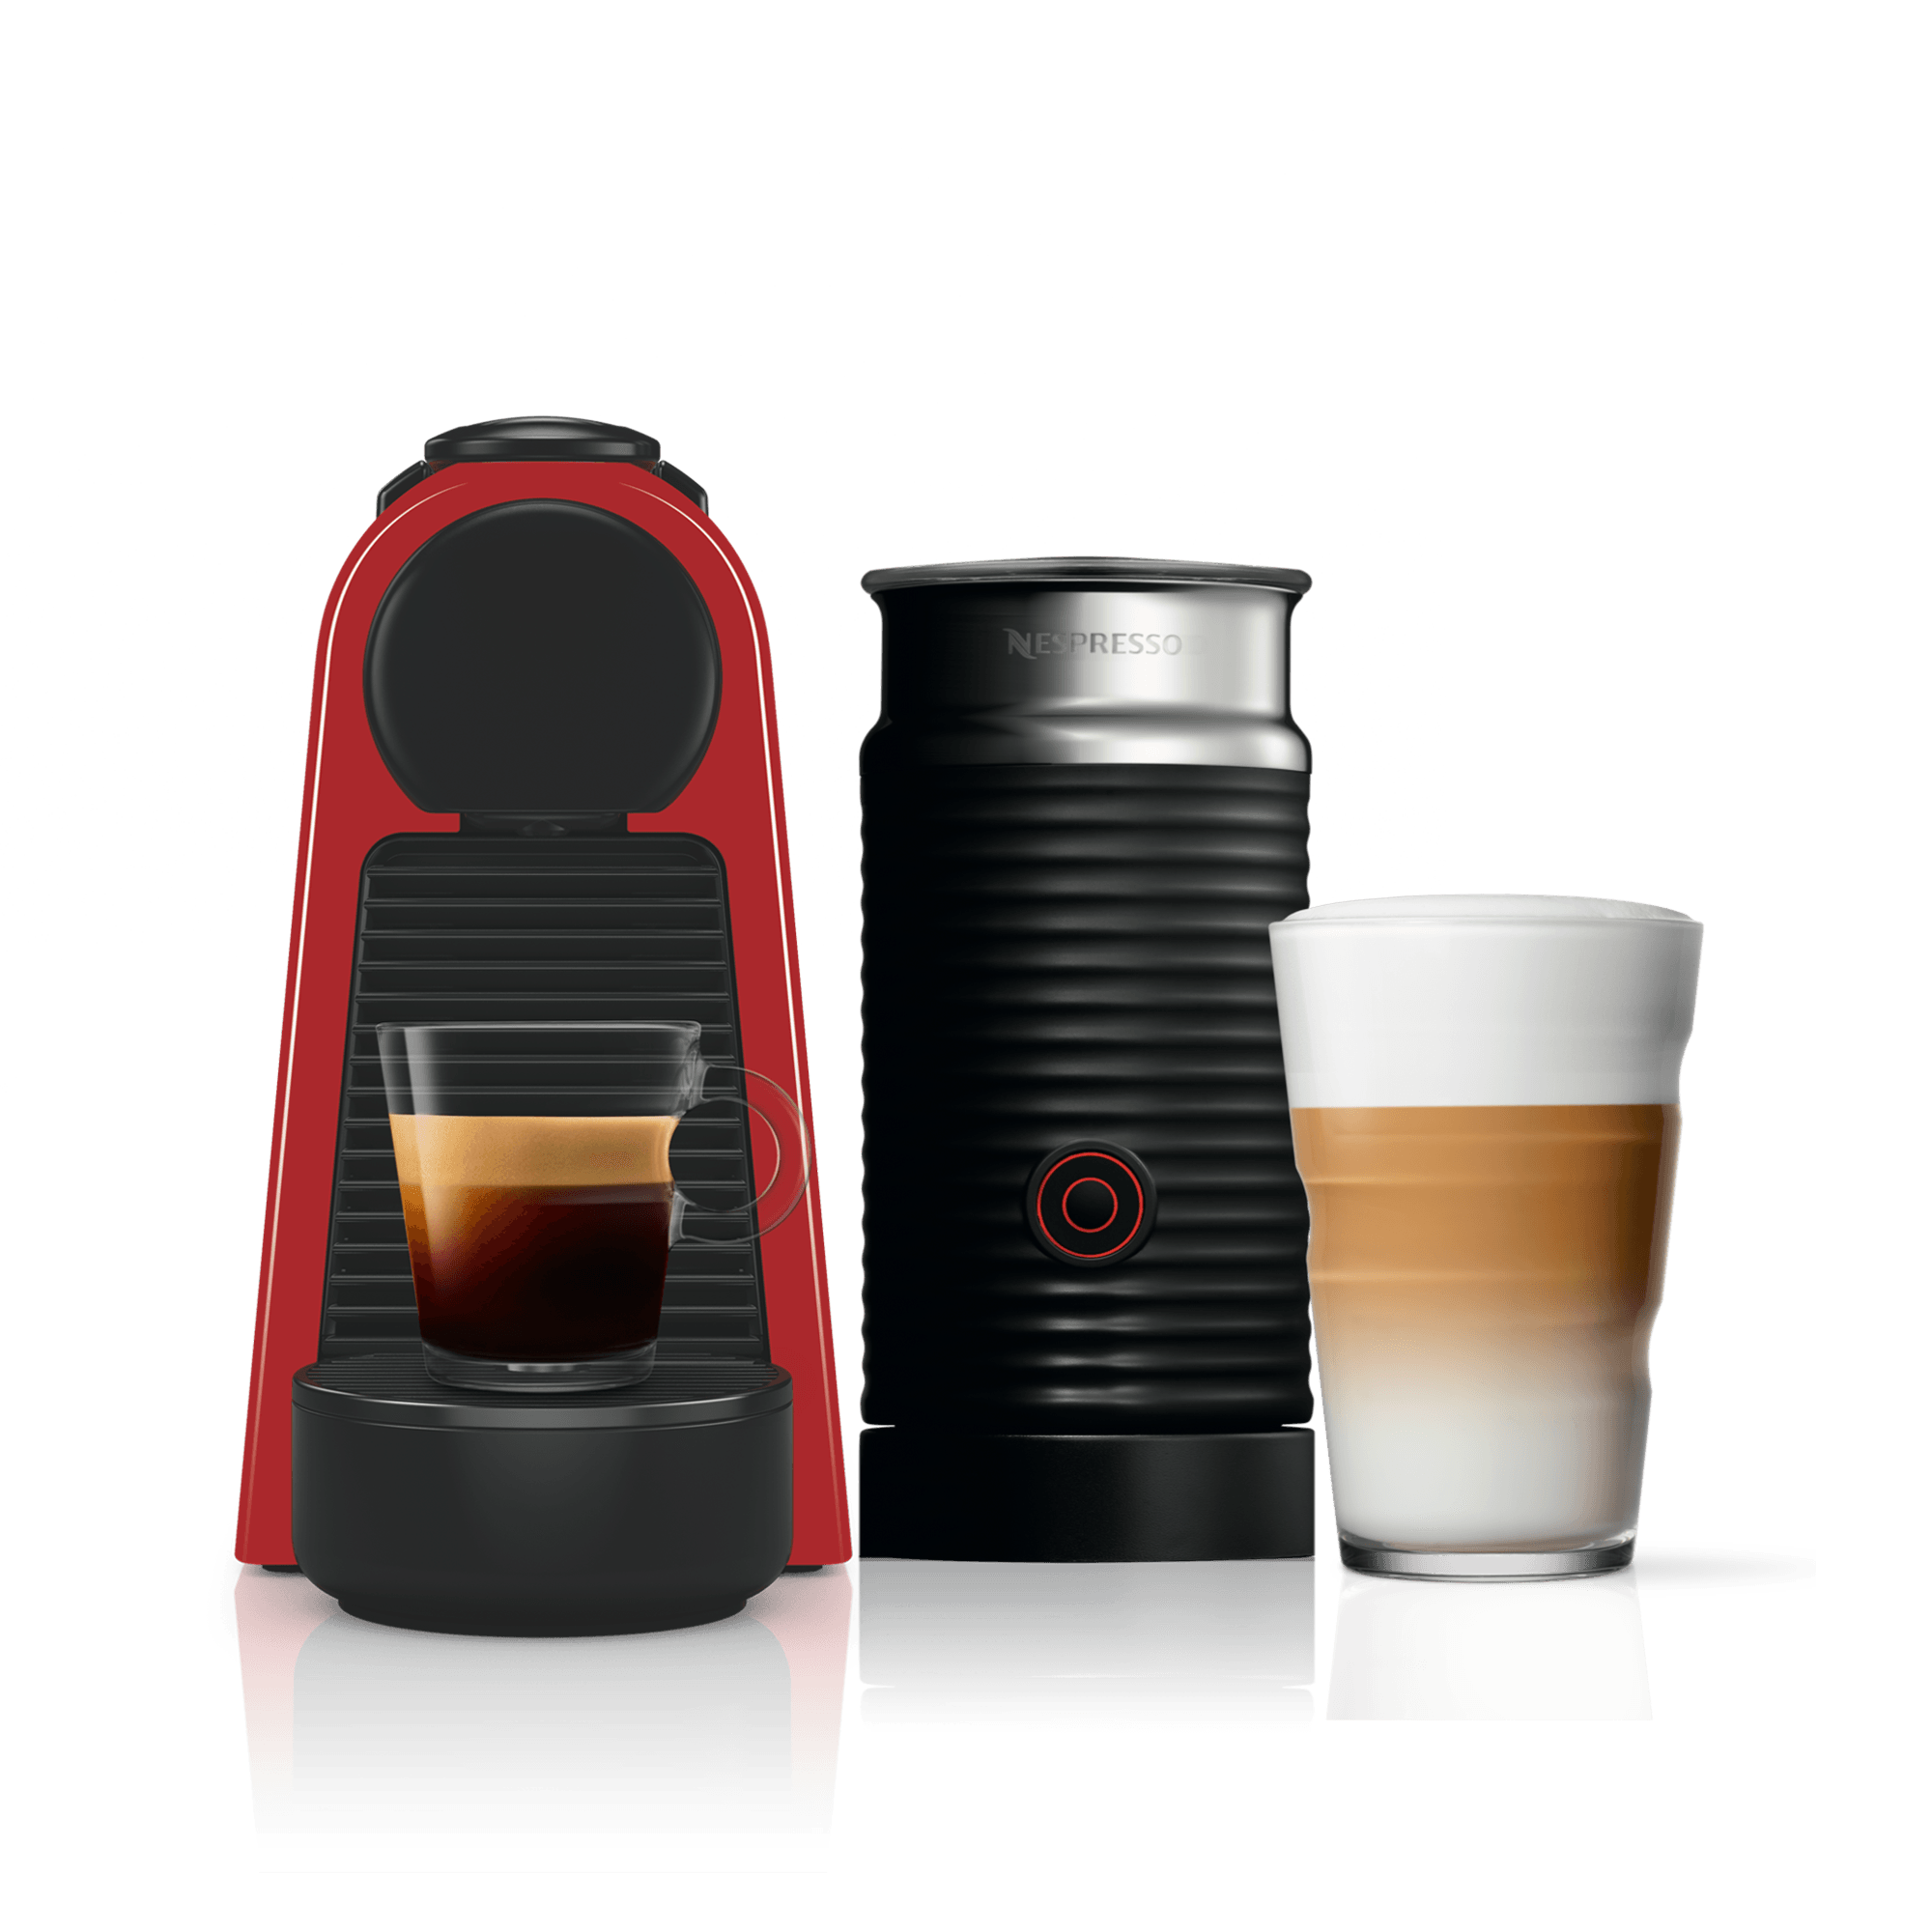 nespresso coffee machine comparison